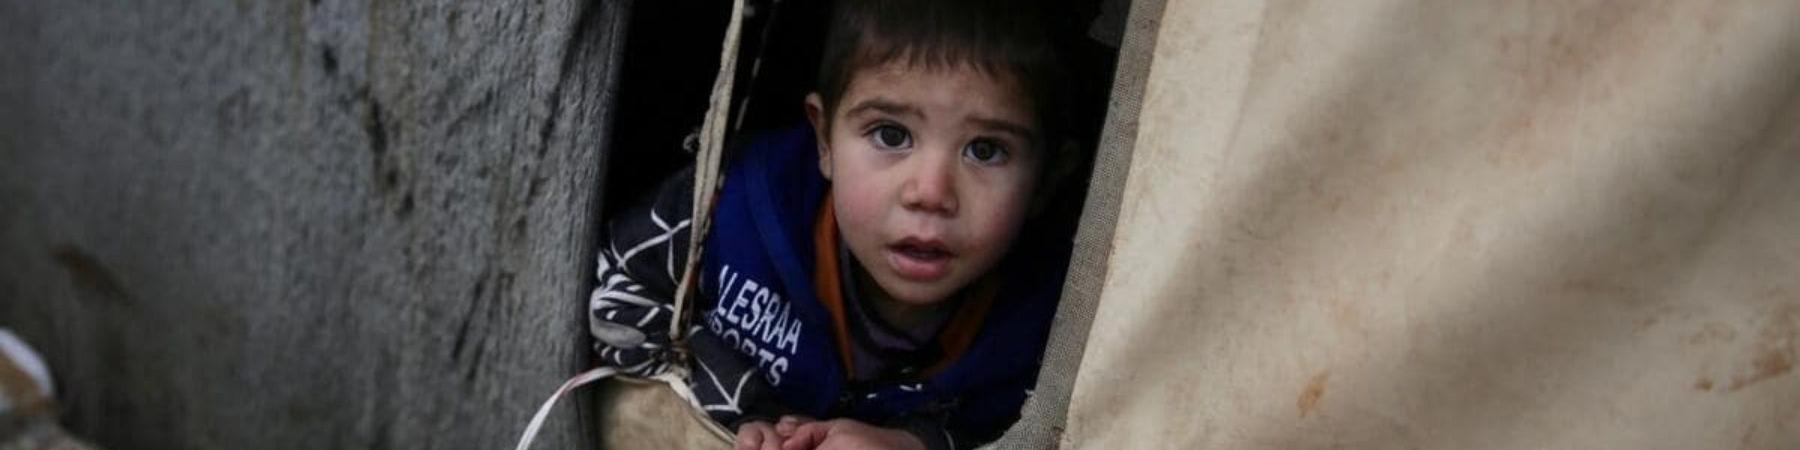 Karim bambino siriano che fuoriesce da tenda del campo profughi 